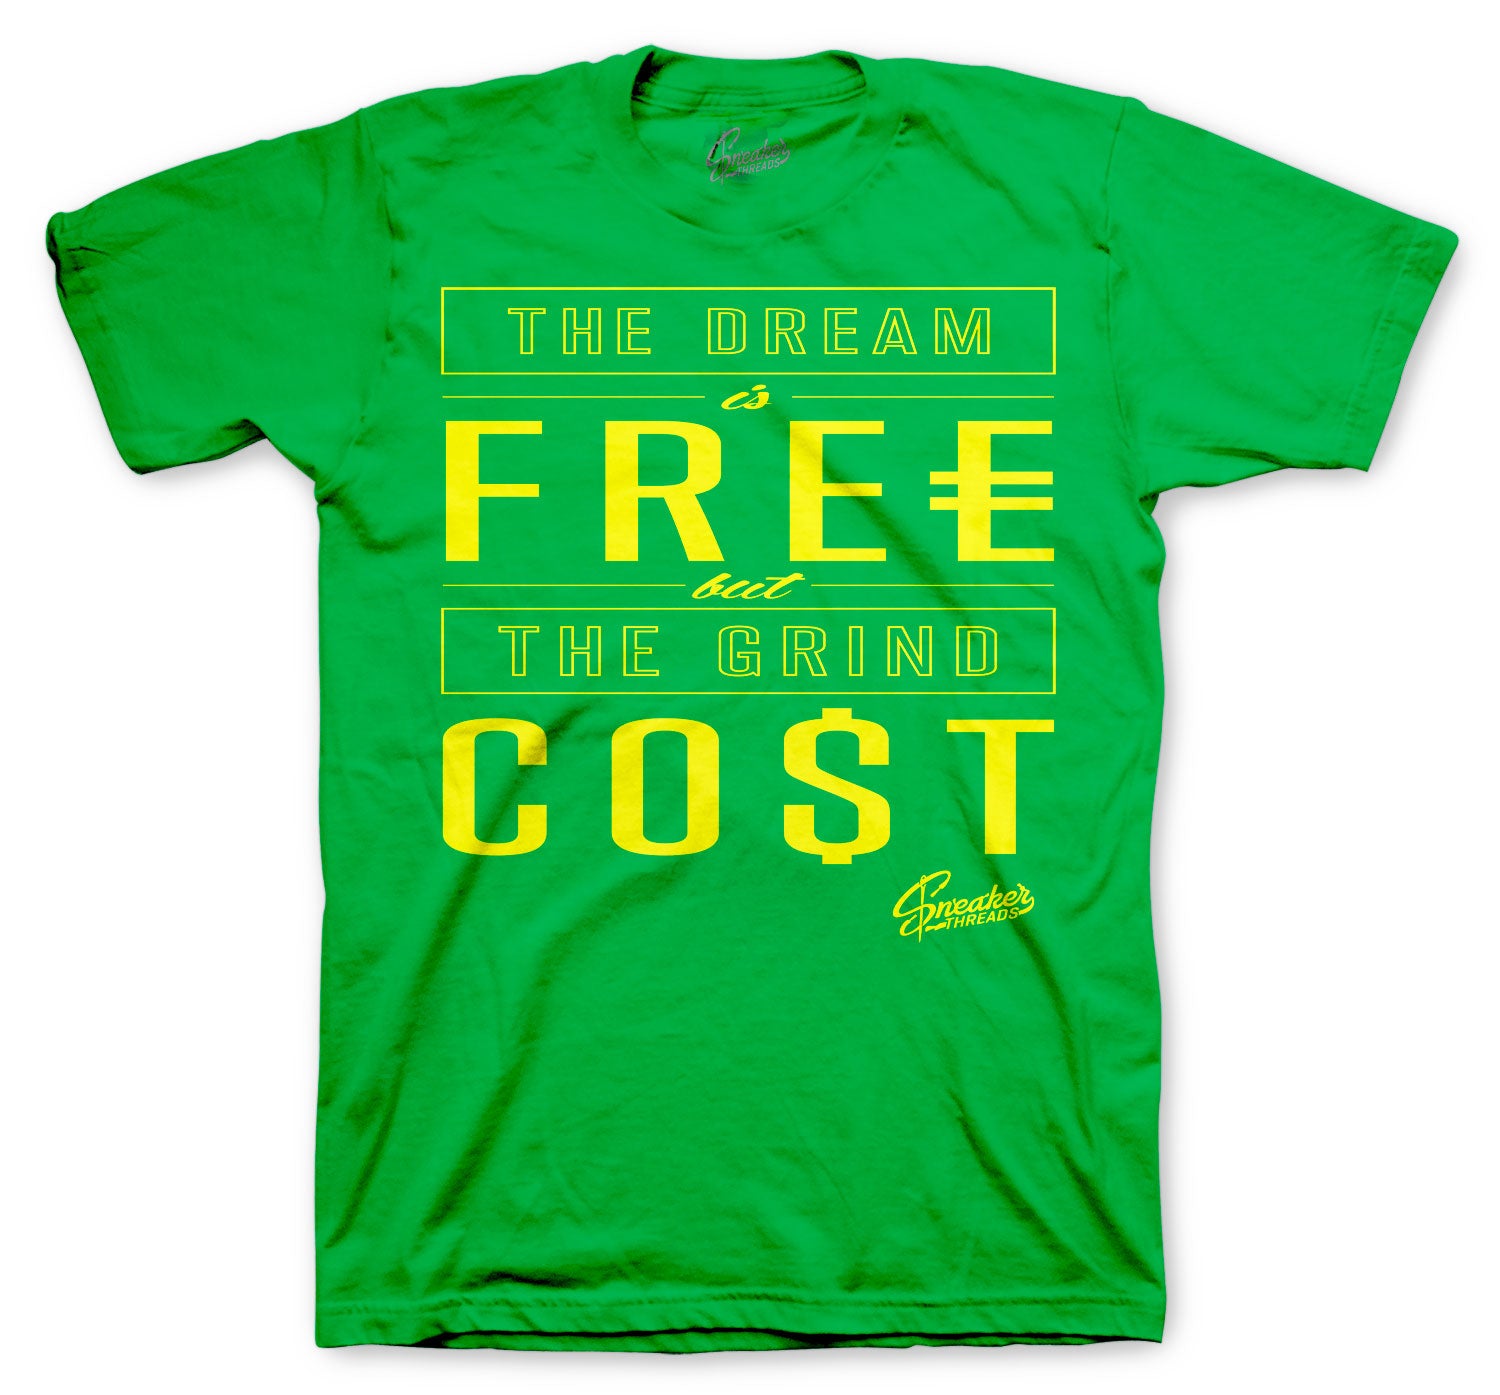 Retro 5 Oregon Shirt - Cost - Green